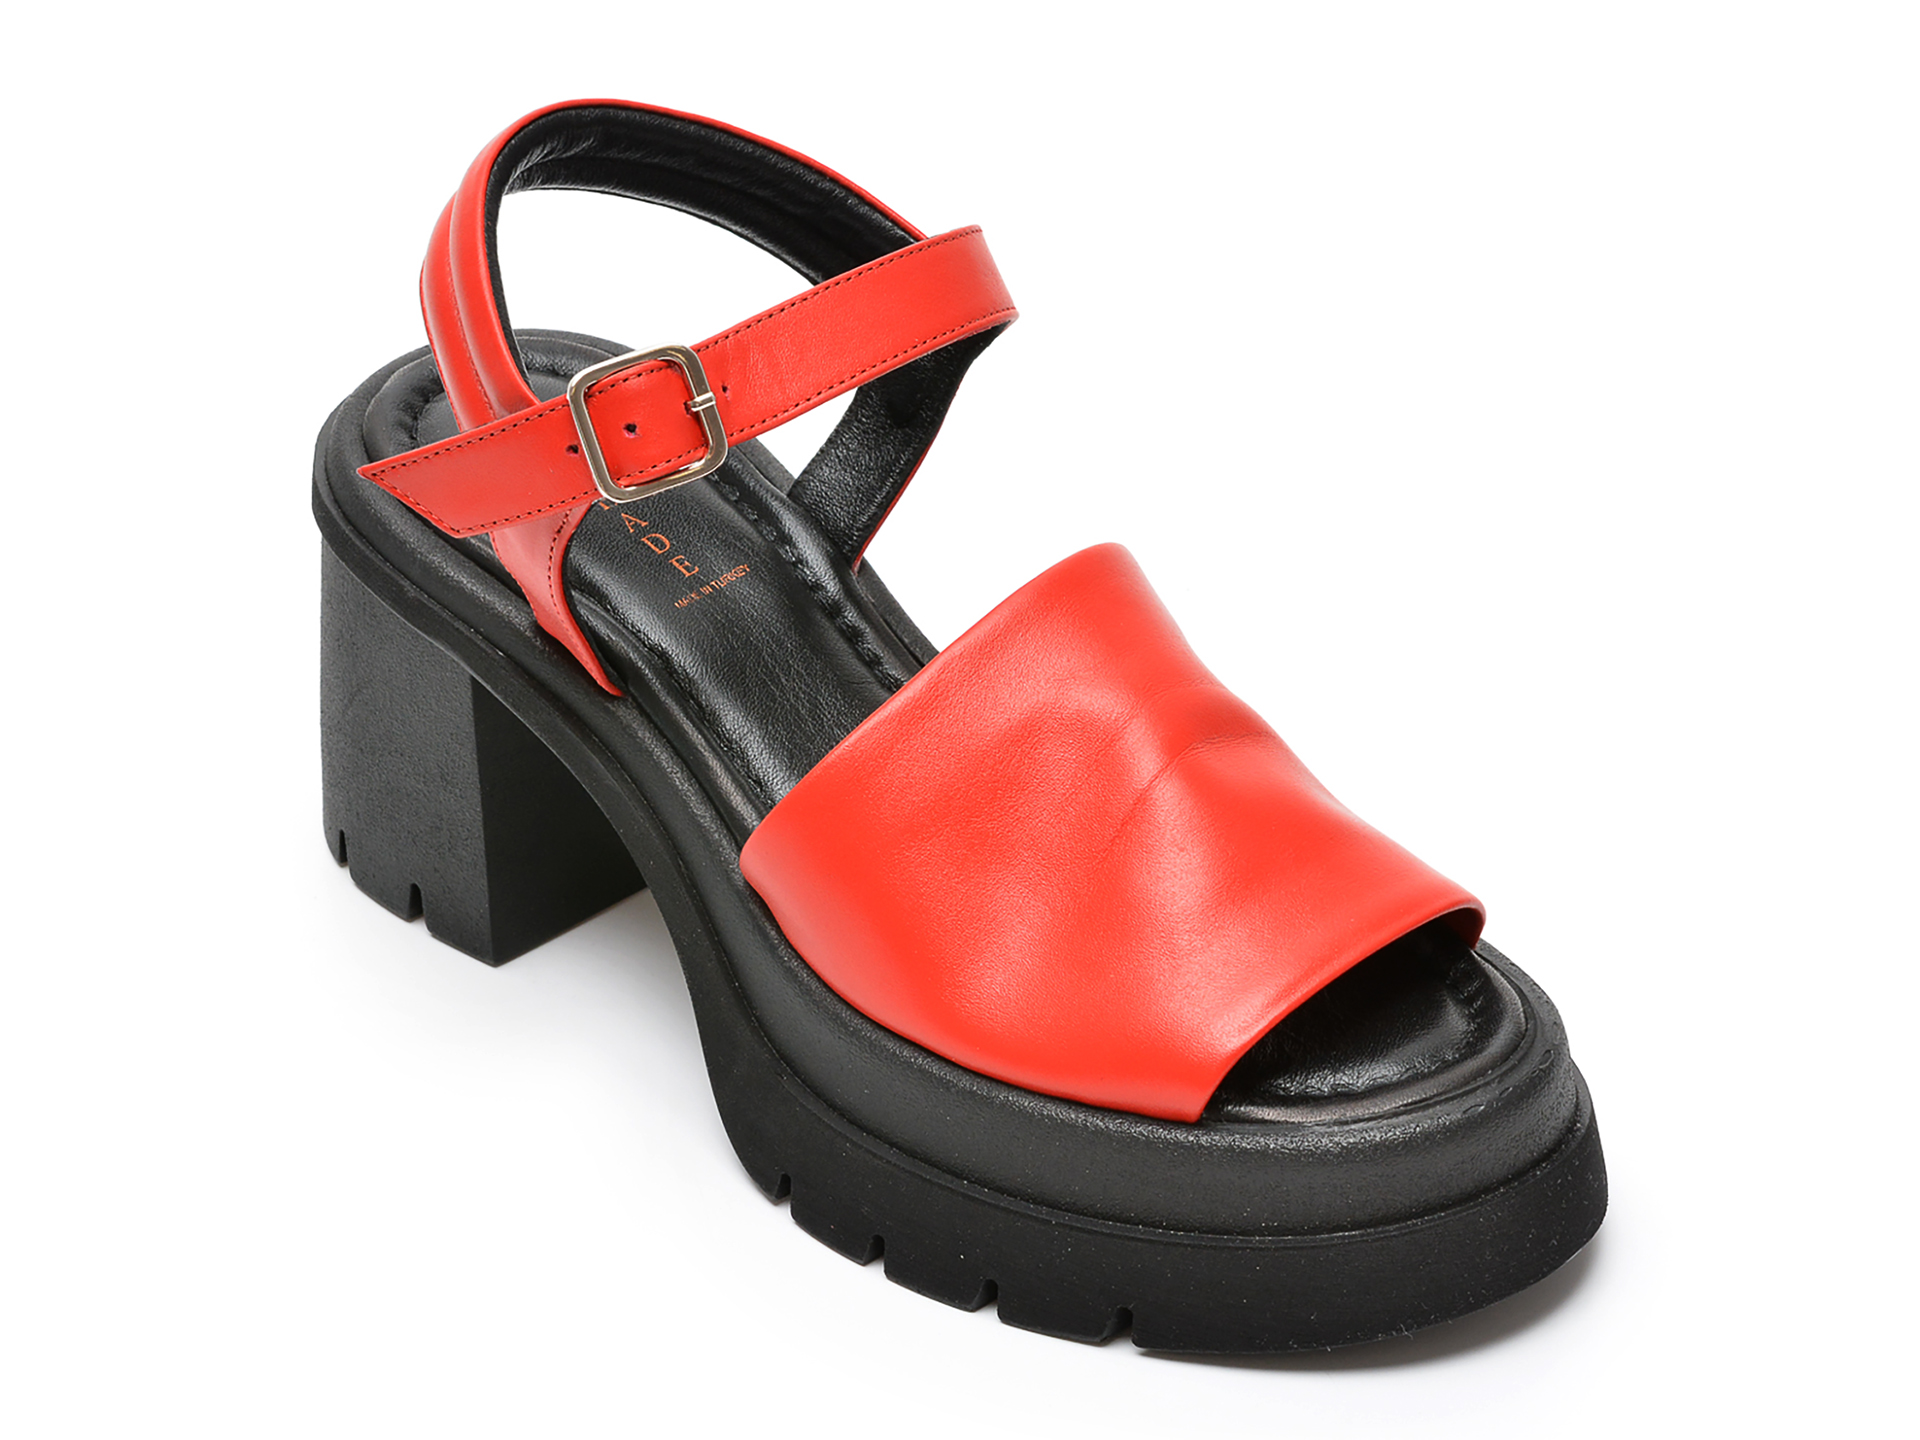 Sandale OSHADE rosii, 752504, din piele naturala OSHADE